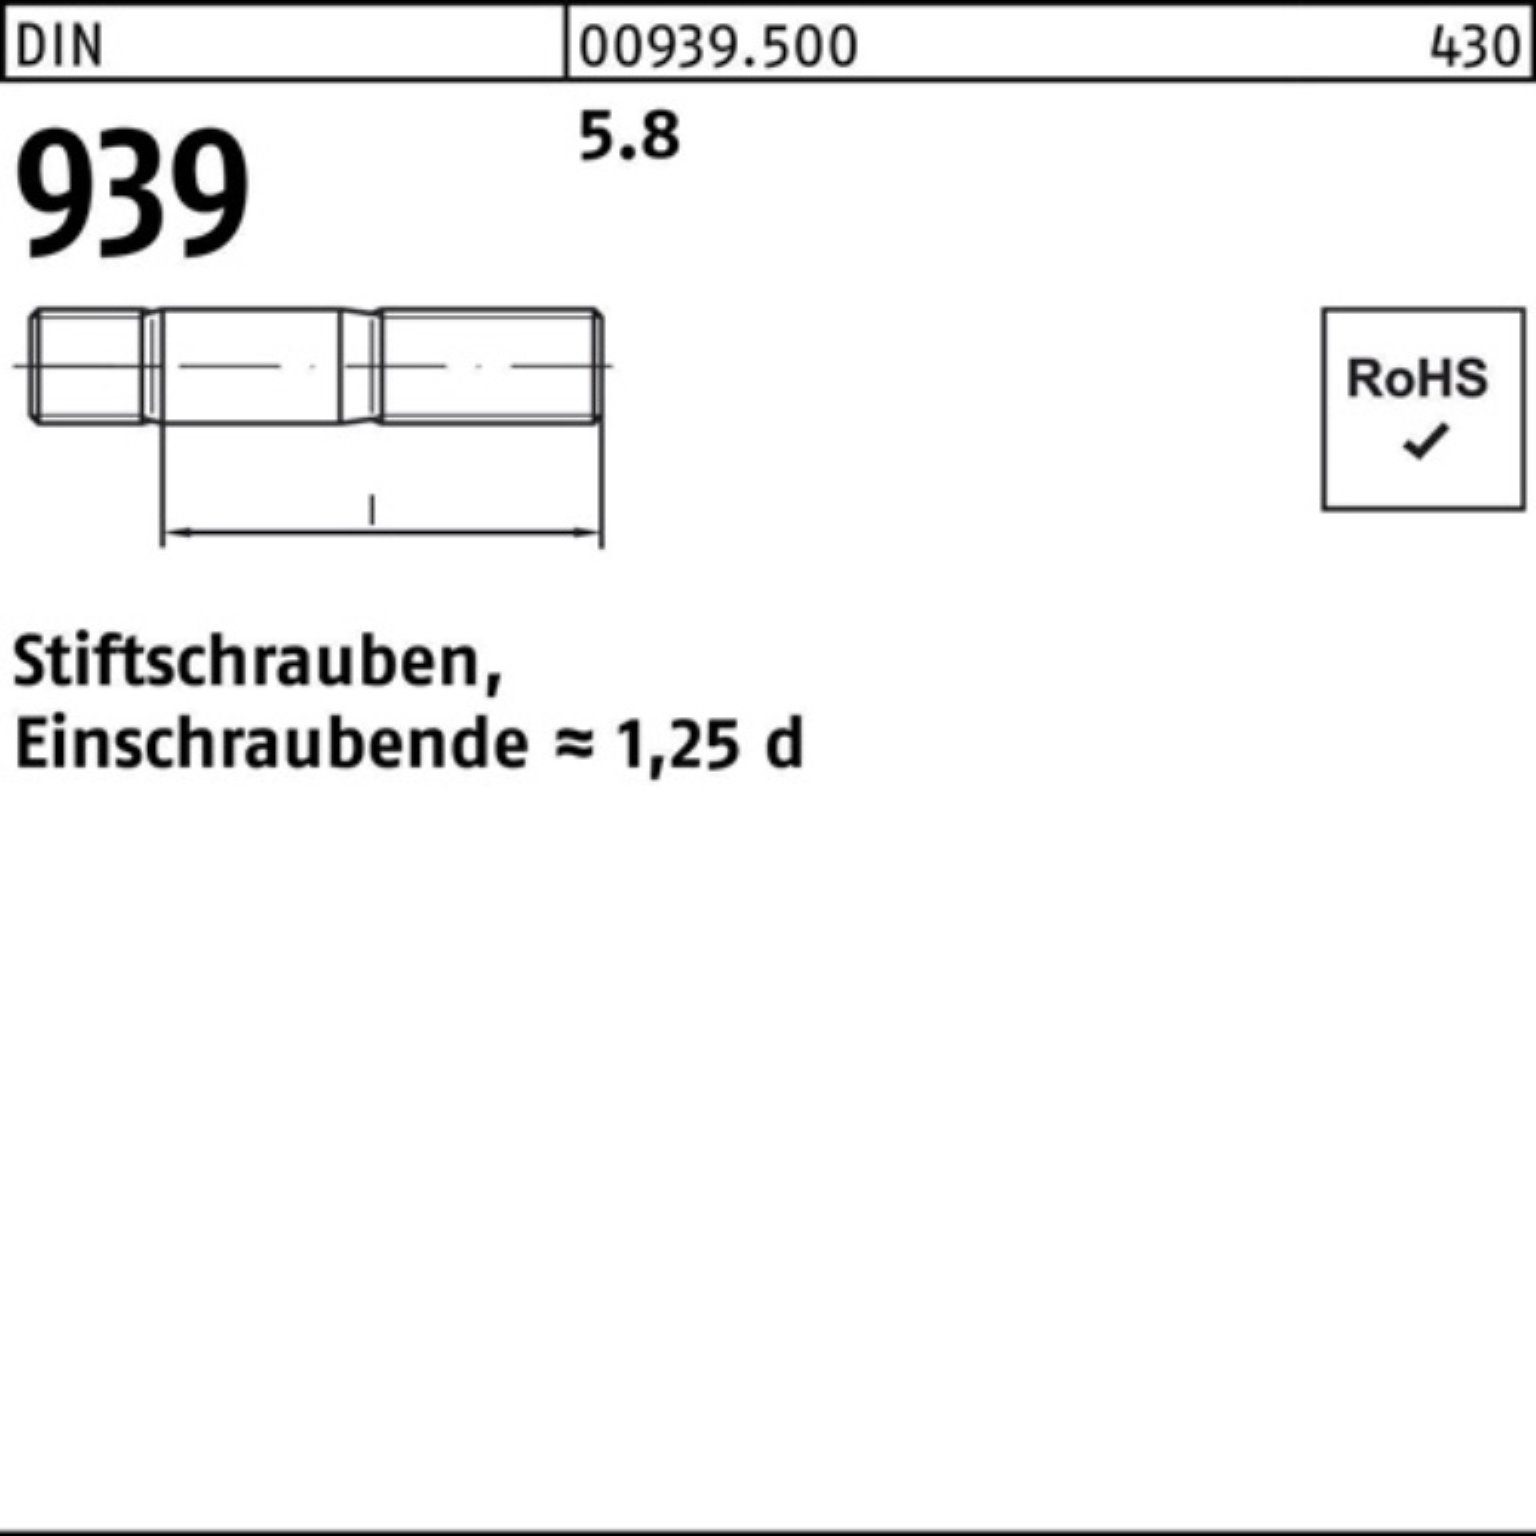 S 100er 5.8 M20x DIN Stiftschraube Reyher 25 50 Einschraubende=1,25d Stiftschraube Pack 939